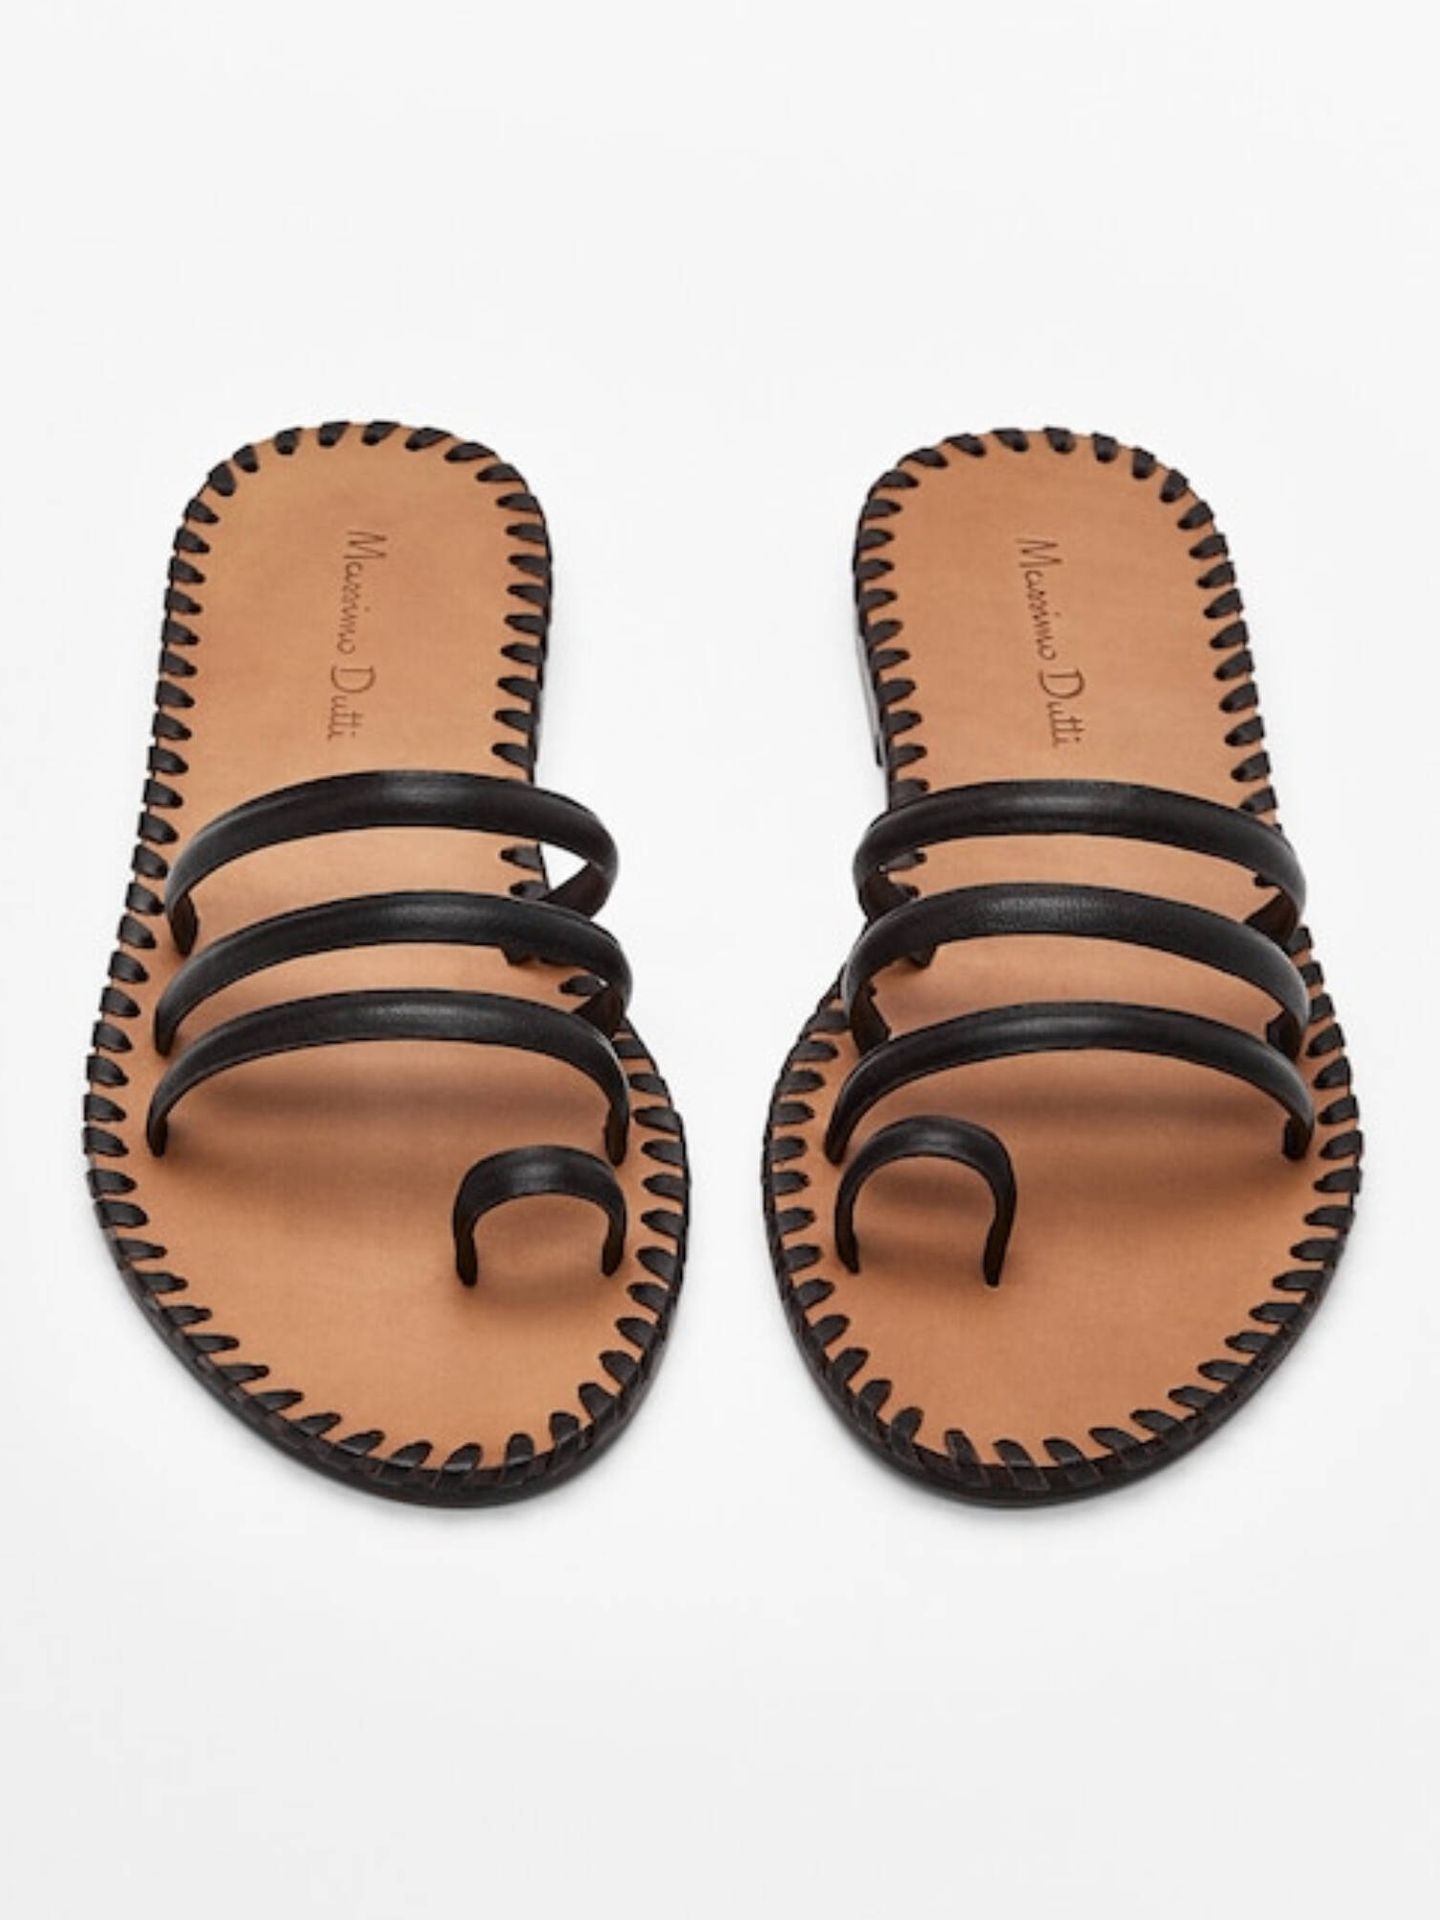 Estas sandalias planas son el mix perfecto para el vestido de Massimo Dutti. (Cortesía)